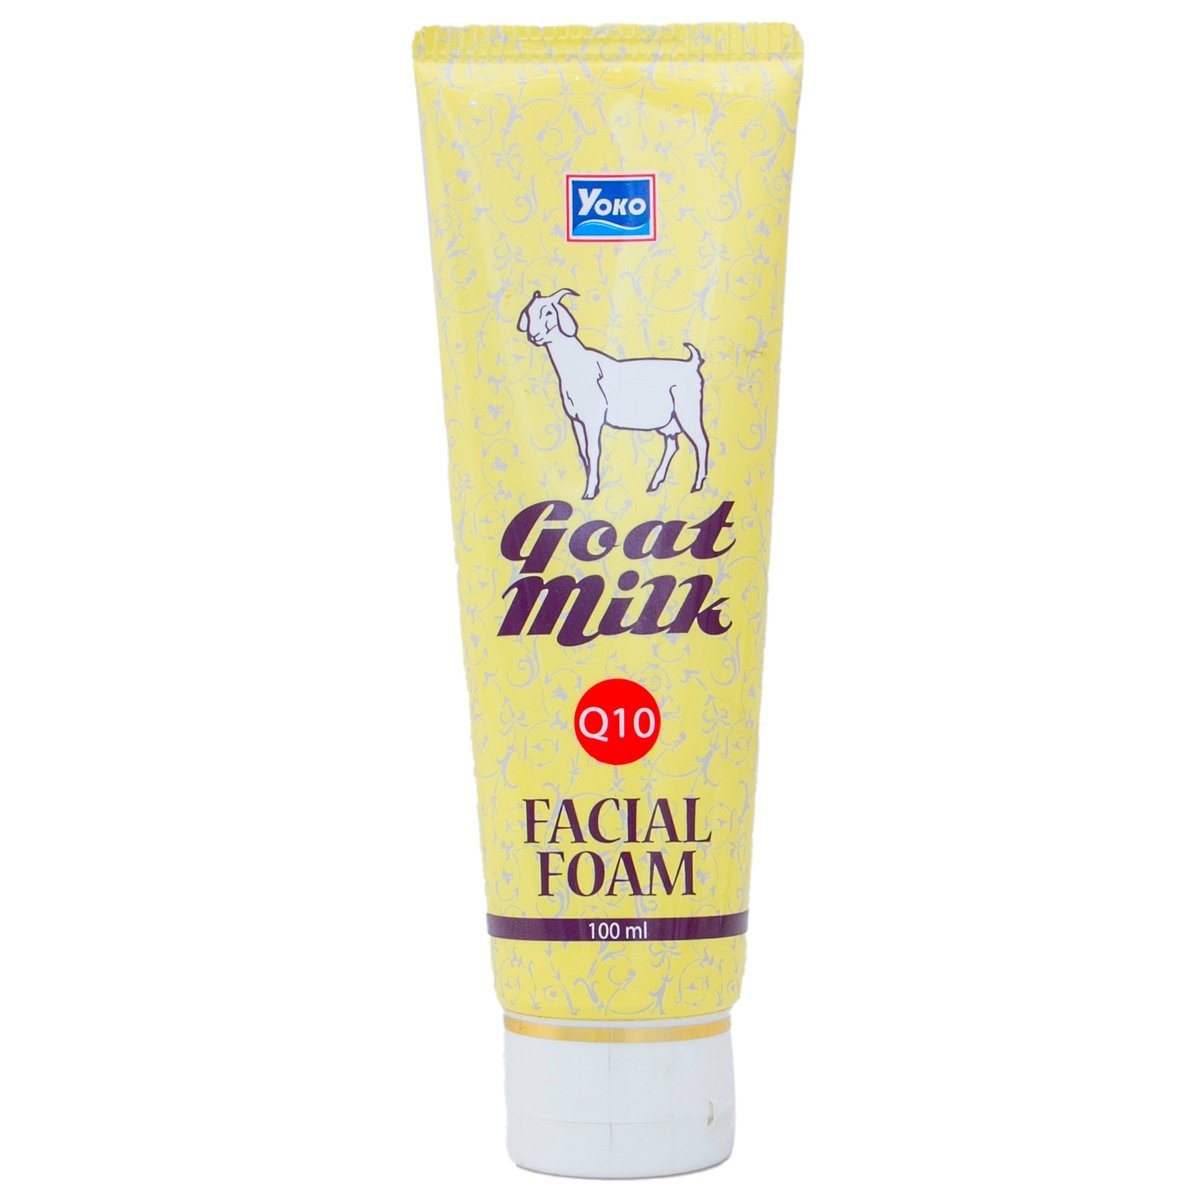 Yoko Facial Foam Goat Milk 100 ml